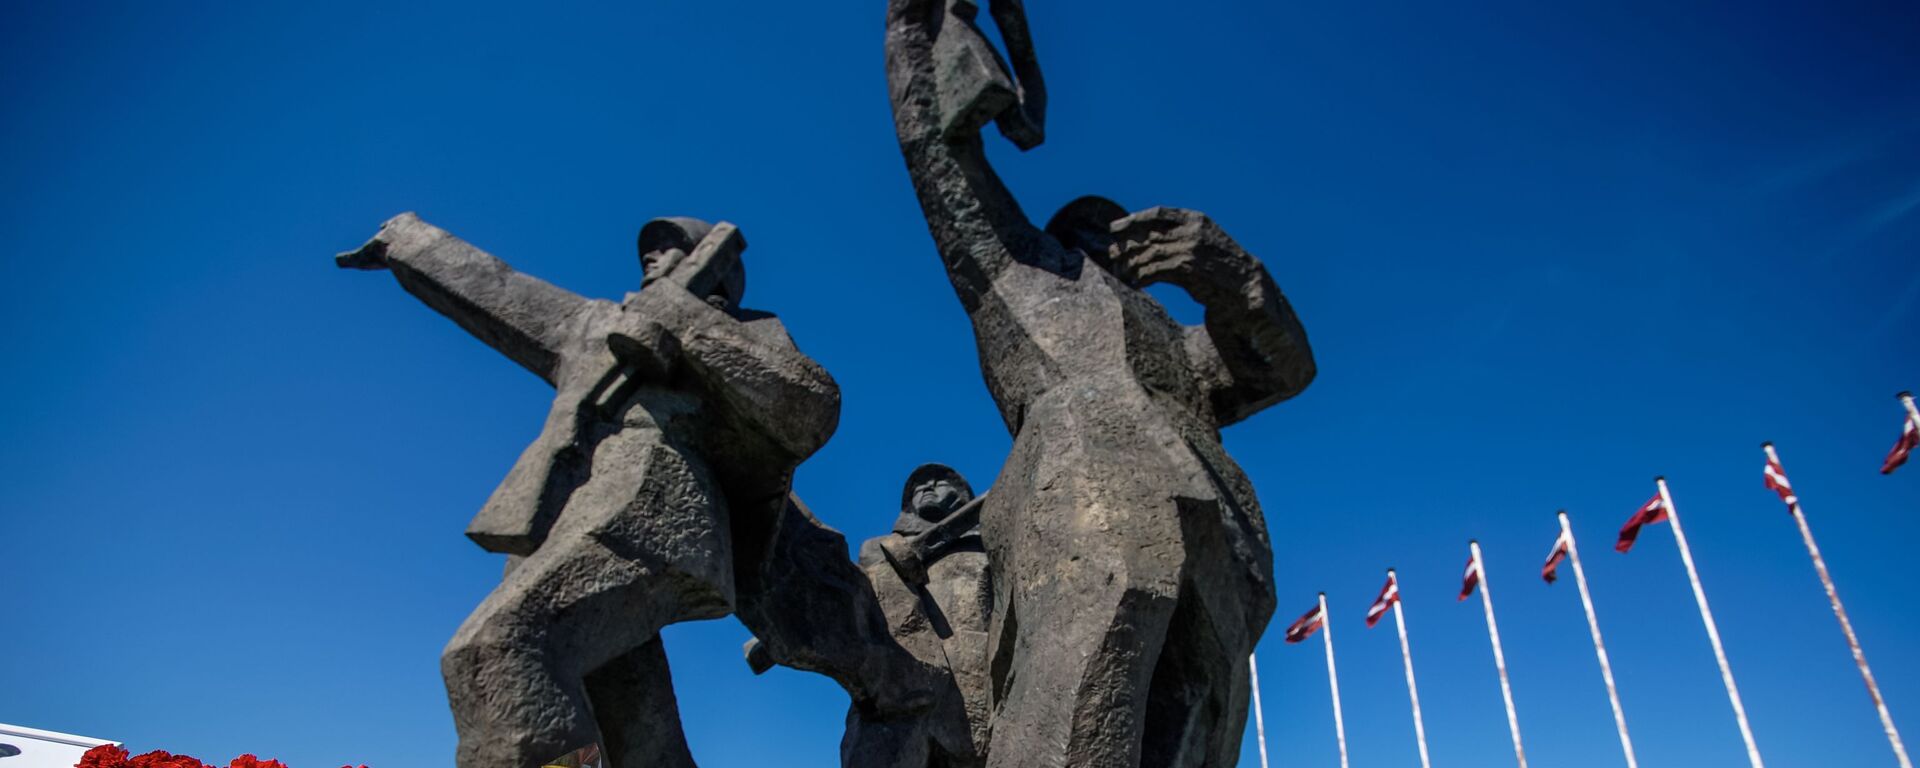 Памятник Освободителям в Риге - Sputnik Латвия, 1920, 18.02.2021